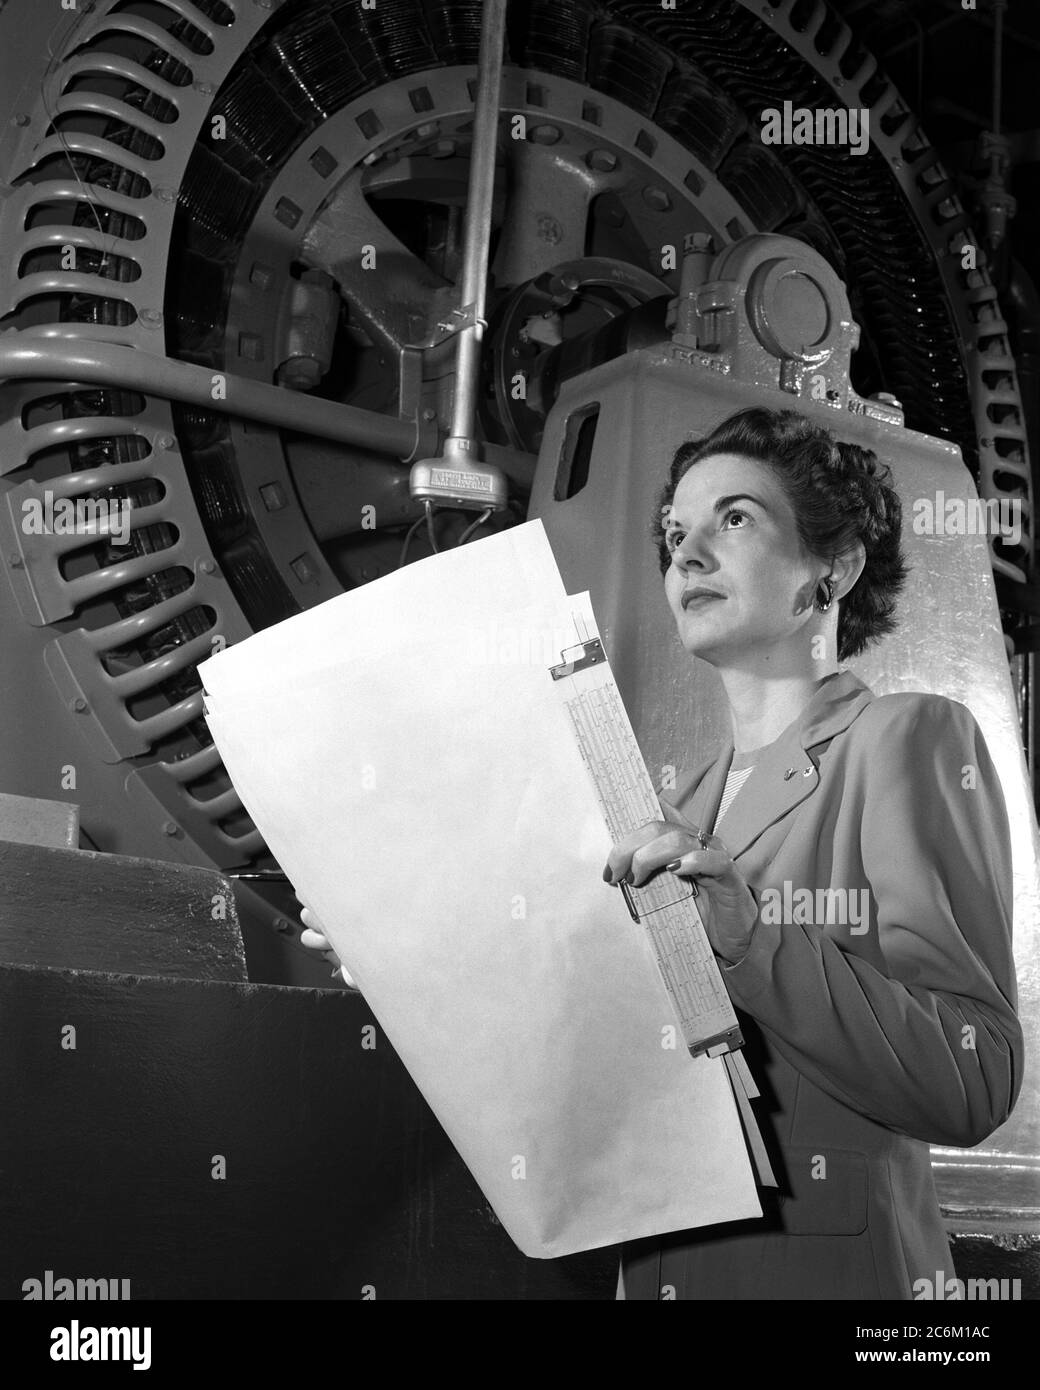 1952, USA: Die amerikanische Elektroingenieurin Frau KITTY Wingfield O'BRIEN JOYNER (1916 - 1993) der NASA, bei der Arbeit, Experte für Elektronik, am LANGLEY FORSCHUNGSZENTRUM. In diesem Foto Analyse des Betriebs einer Windtunnelturbine bei NACA Langley im Jahr 1952 . Erinnert wie die erste Frau Ingenieur am Memorial Langley Aeronautical Laboratory . - NASA - N.A.S. - die Nationale Luft- und Raumfahrtbehörde - foto storiche - foto storica - scienziato - Wissenschaftler - INGEGNERE DONNA - INGEGNERIA ELETTRONICA - DONNE DONNA - AL LAVORO - AERONAUTICA --- Archivio GBB Stockfoto